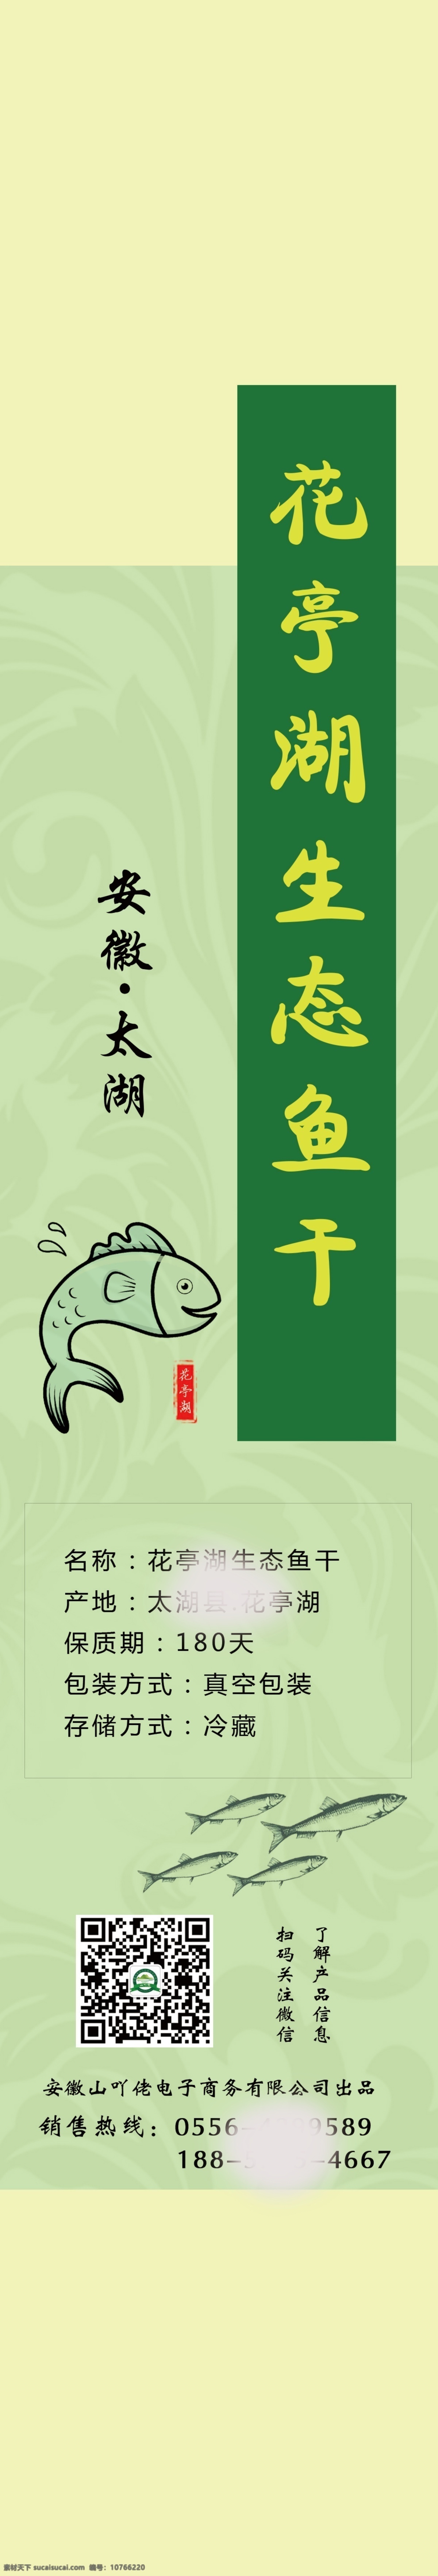 河鱼 鱼干盒子标签 标签 农产品标签 小河鱼 农产品 特产 绿色